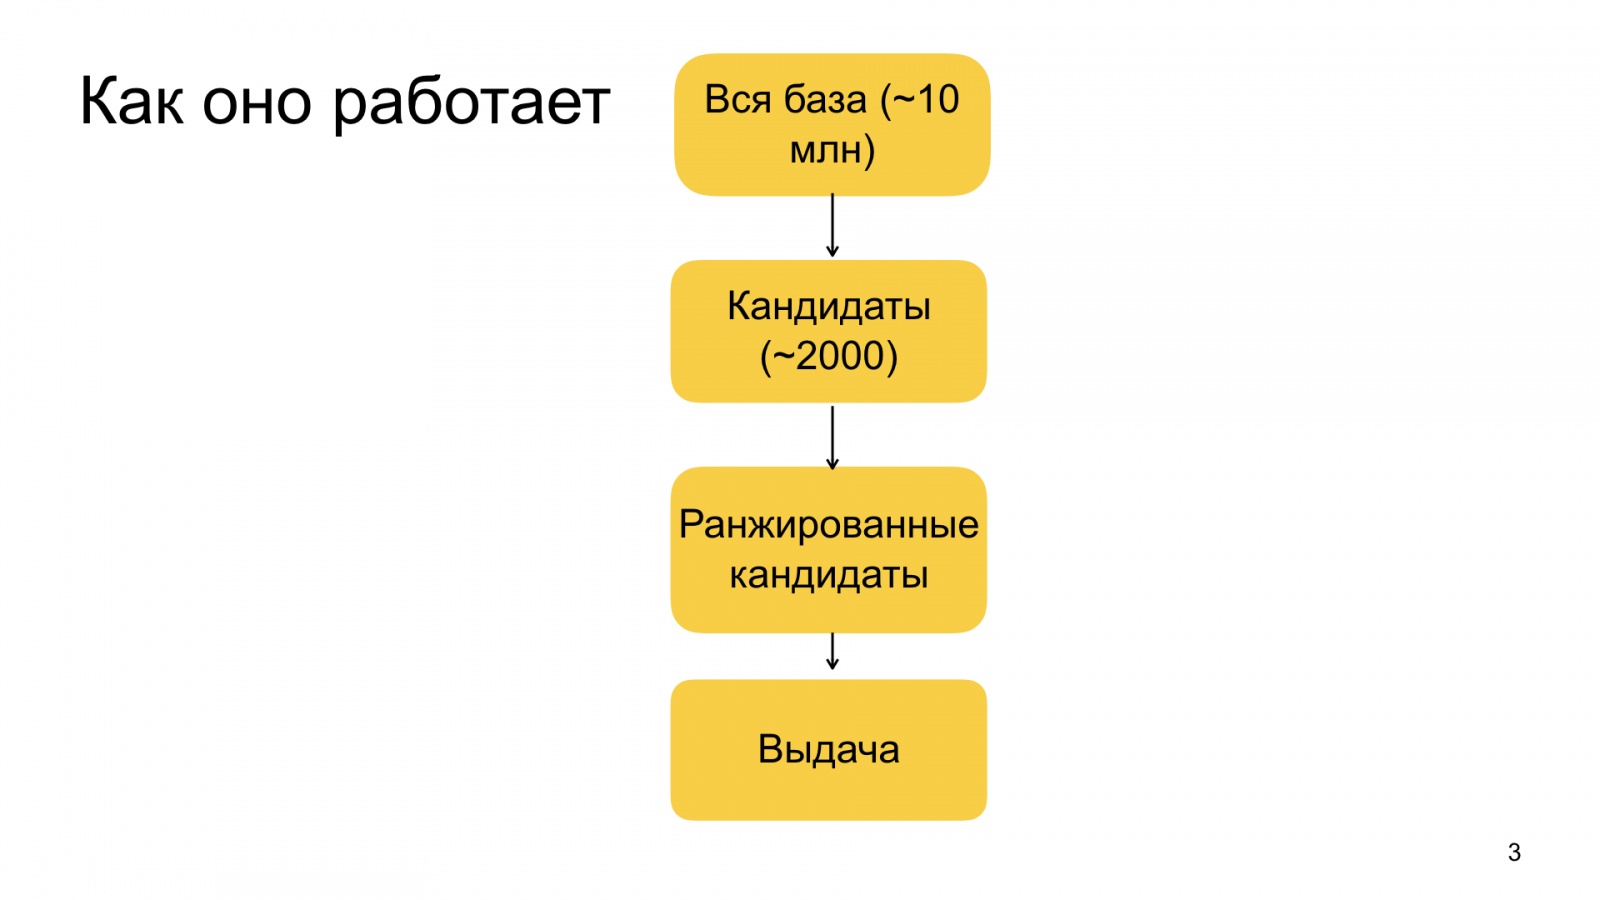 Автороцентричное ранжирование. Доклад Яндекса о поиске релевантной аудитории для авторов Дзена - 3